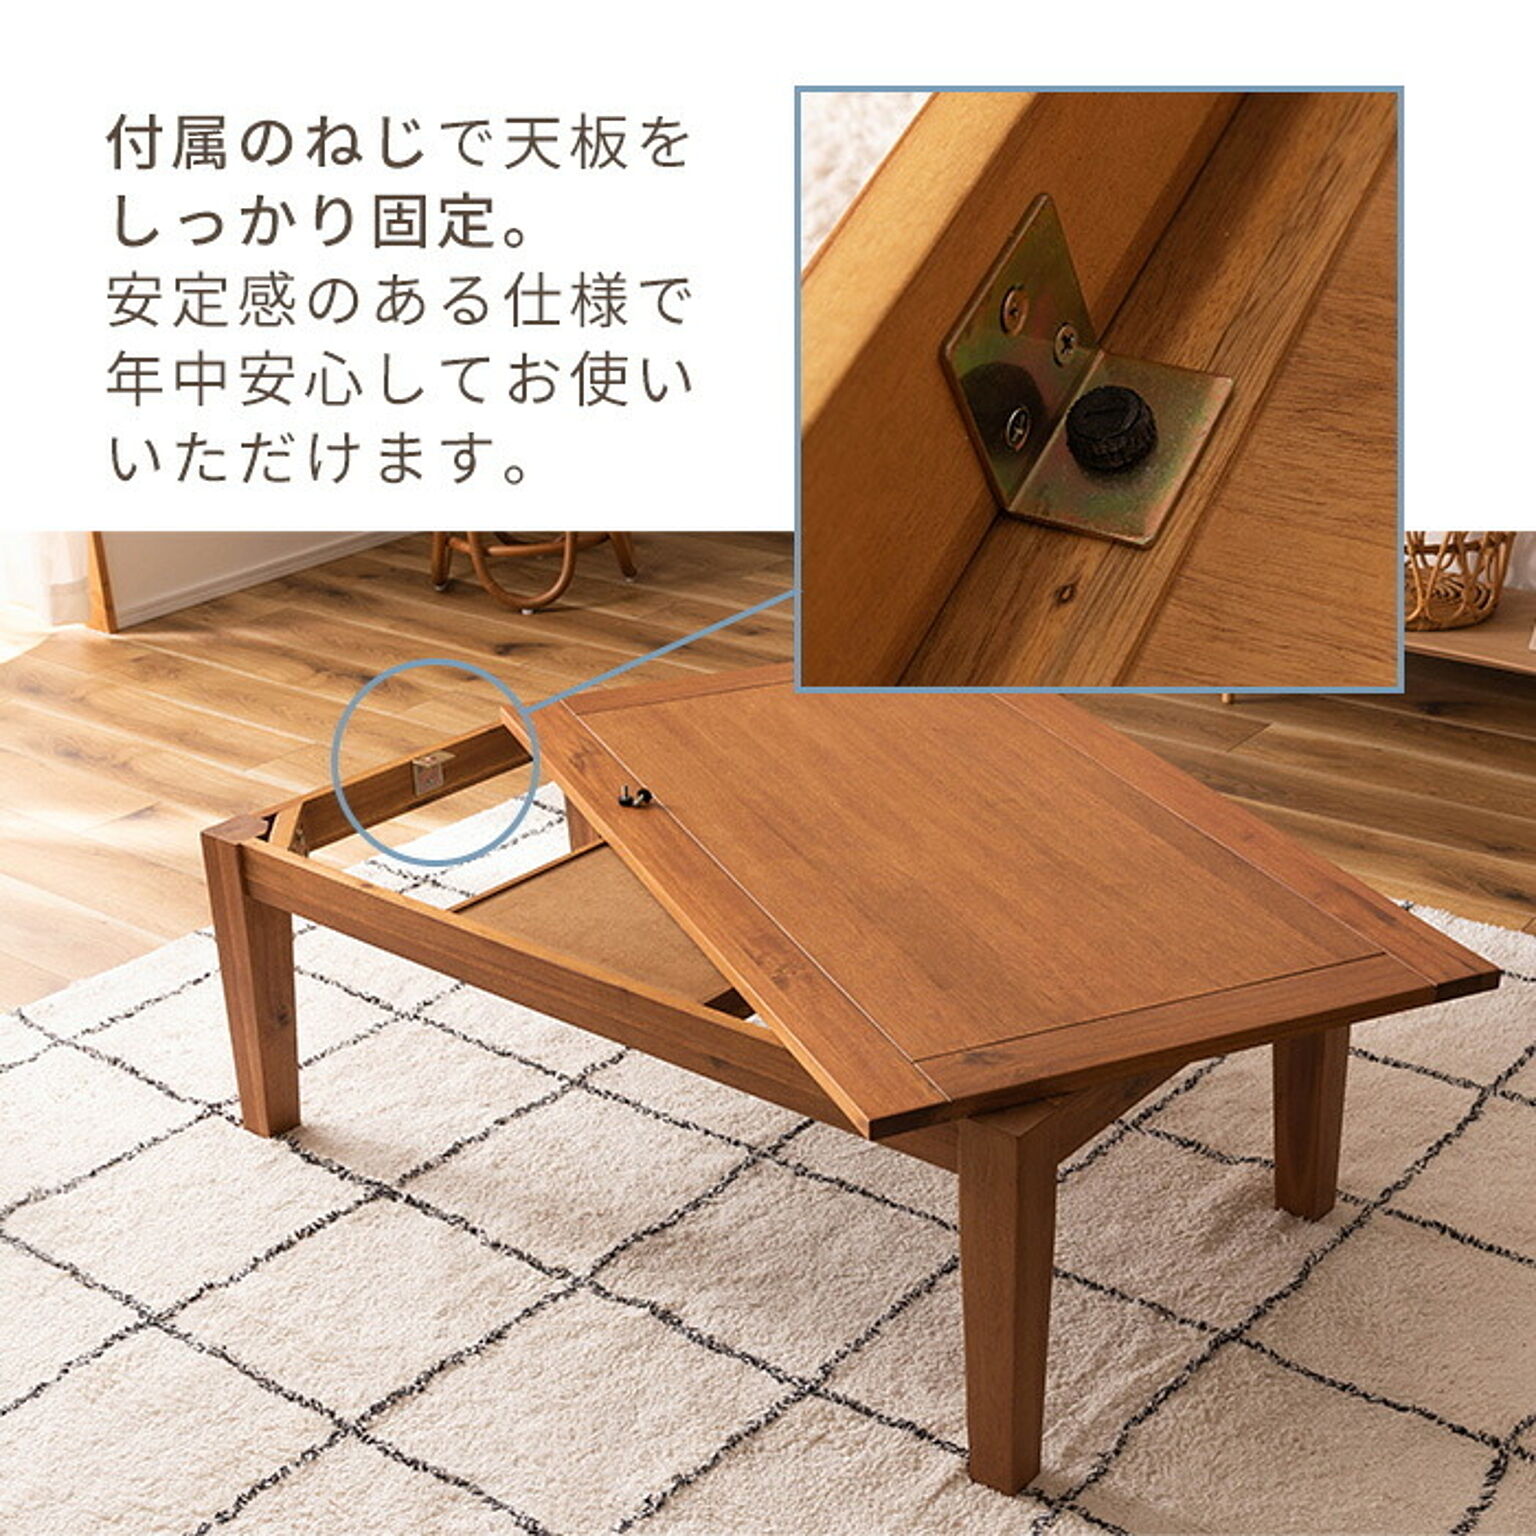 東谷 こたつテーブル ロータイプ 105×60 アカシア木製 1人用・2人用